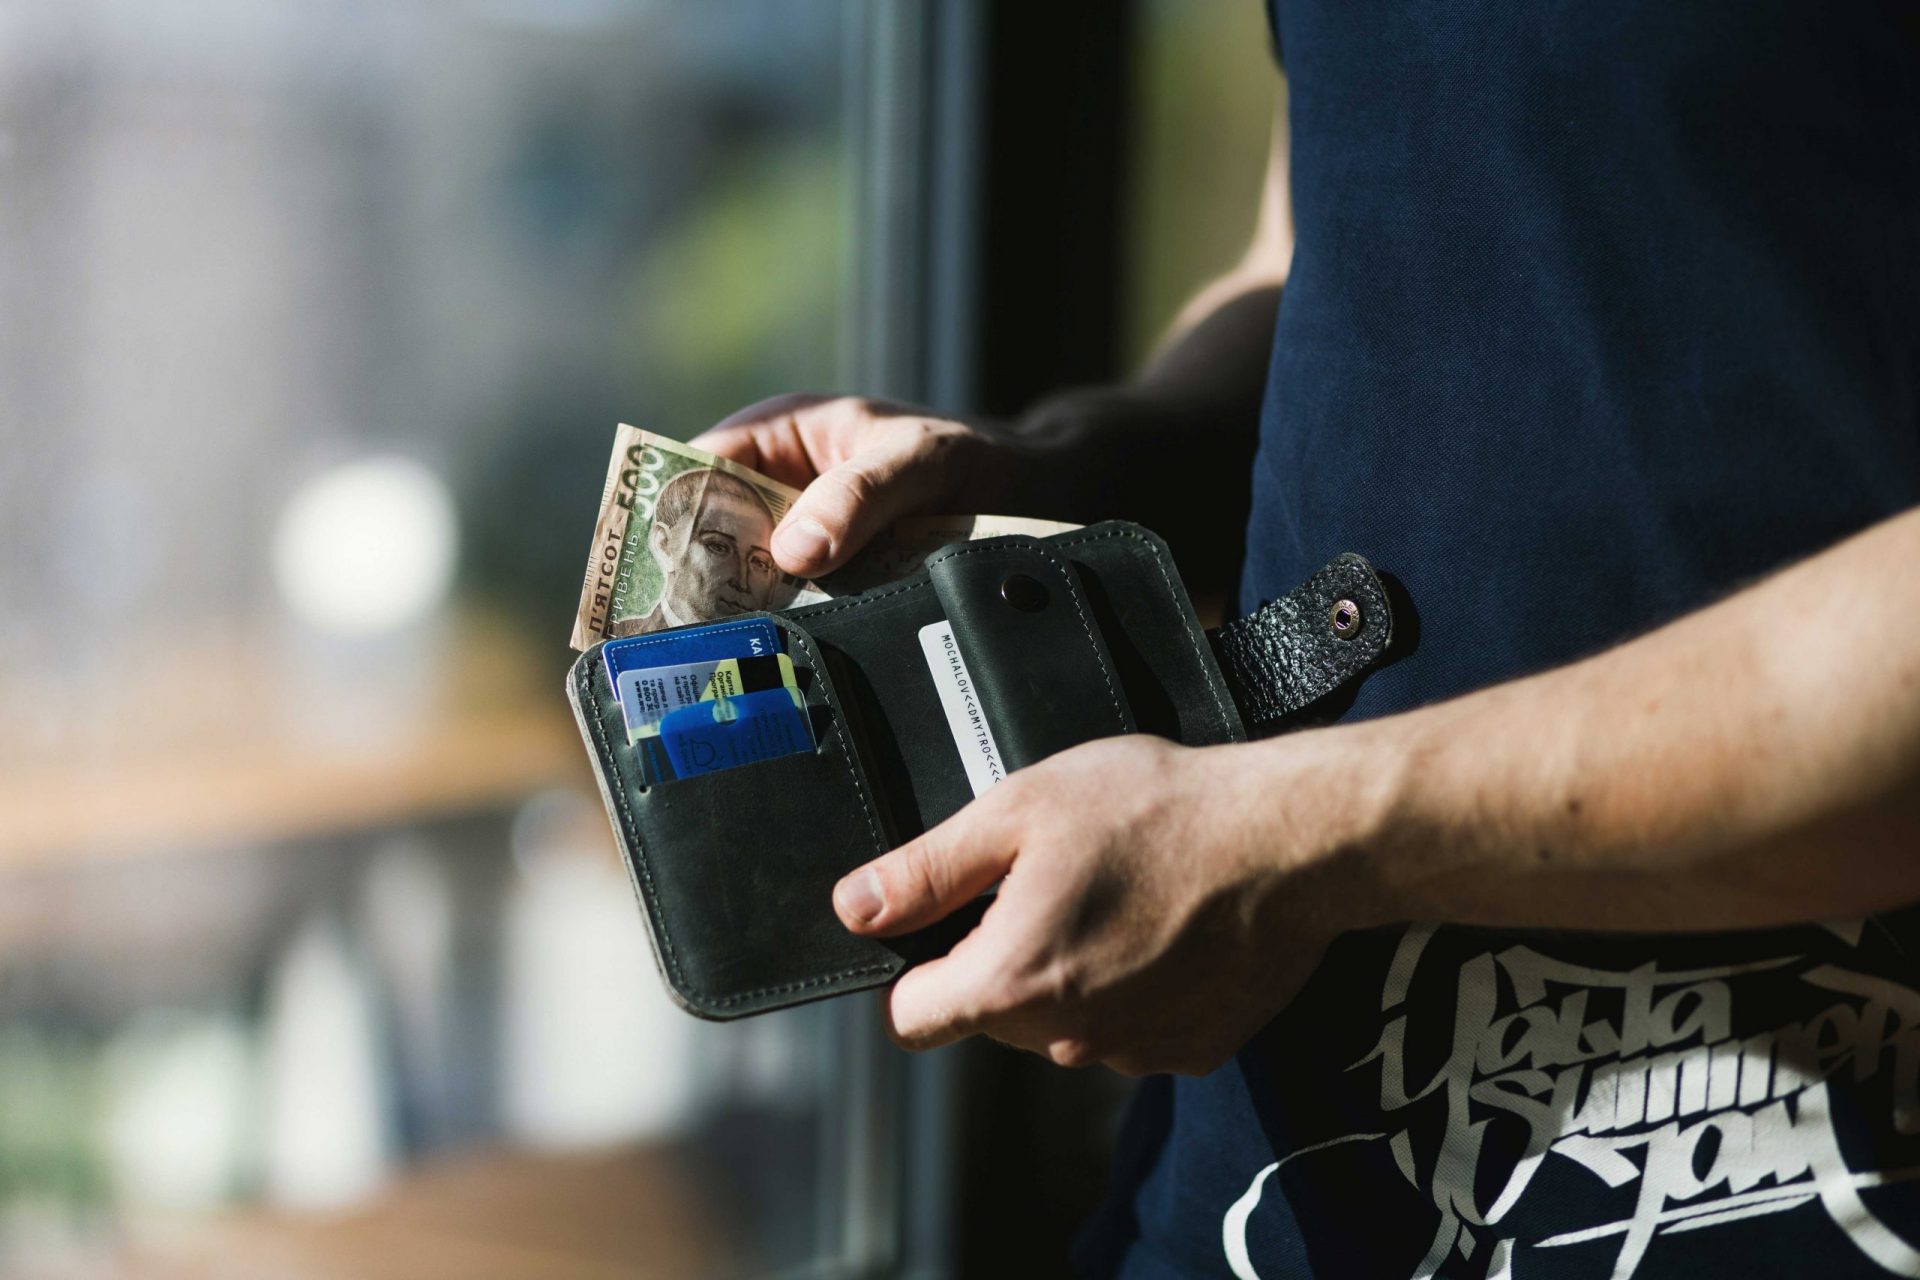 zu sehen ist eine Person, die eine geöffnete Brieftasche in den Händen hält. Thema ist die neue eIDAS Verordnung und das künftige E-Wallet. Bild: Pexels/EVG Kowalievska